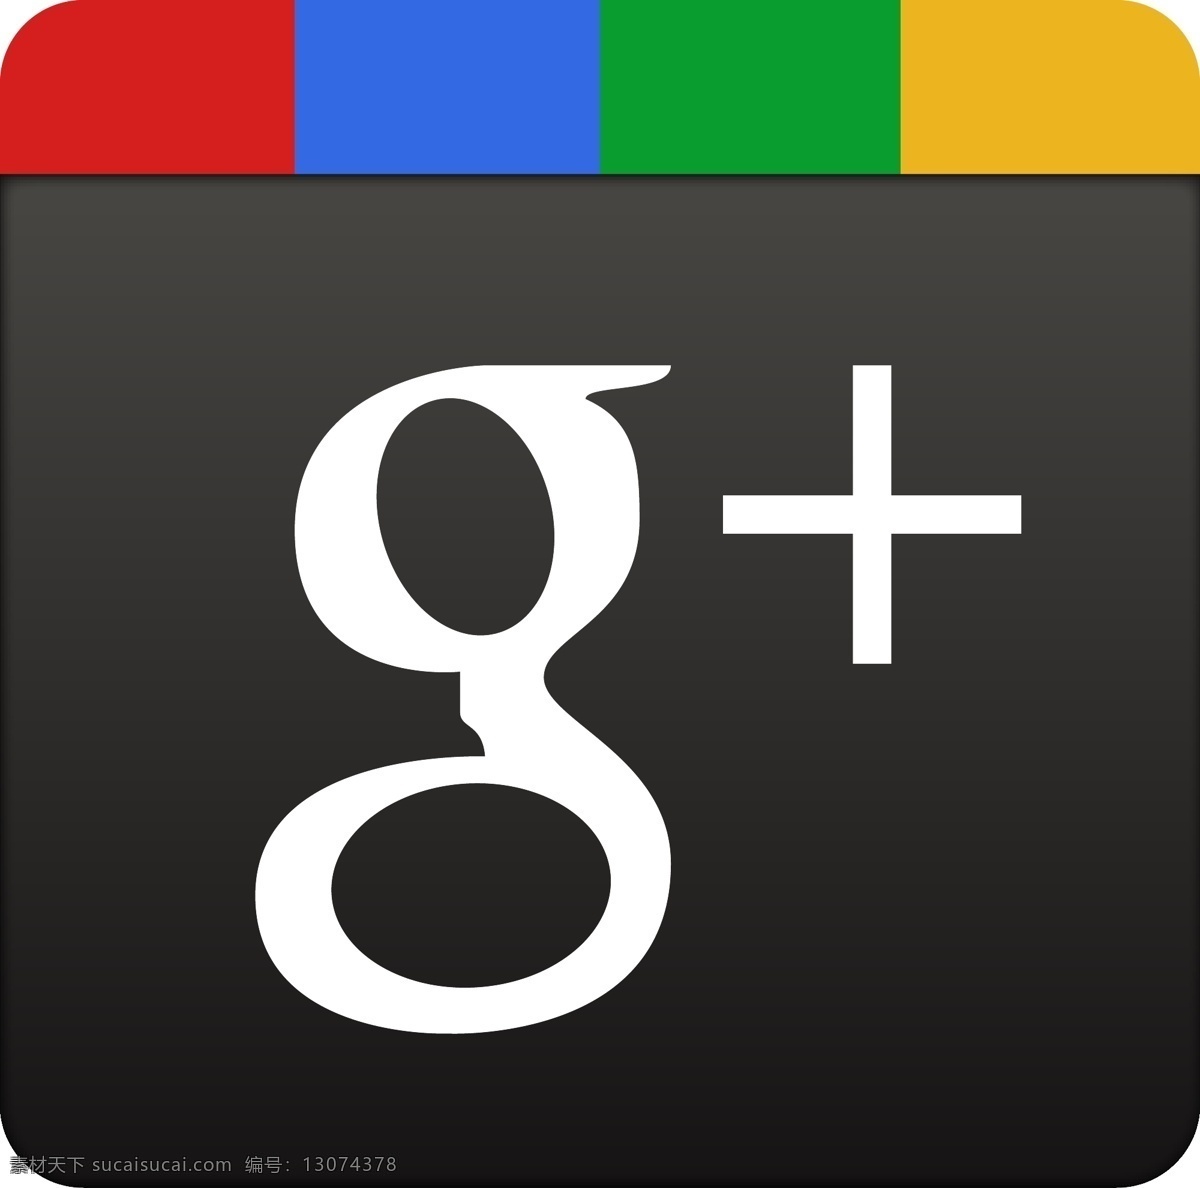 谷歌 矢量标志下载 免费矢量标识 商标 品牌标识 标识 矢量 免费 品牌 公司 灰色